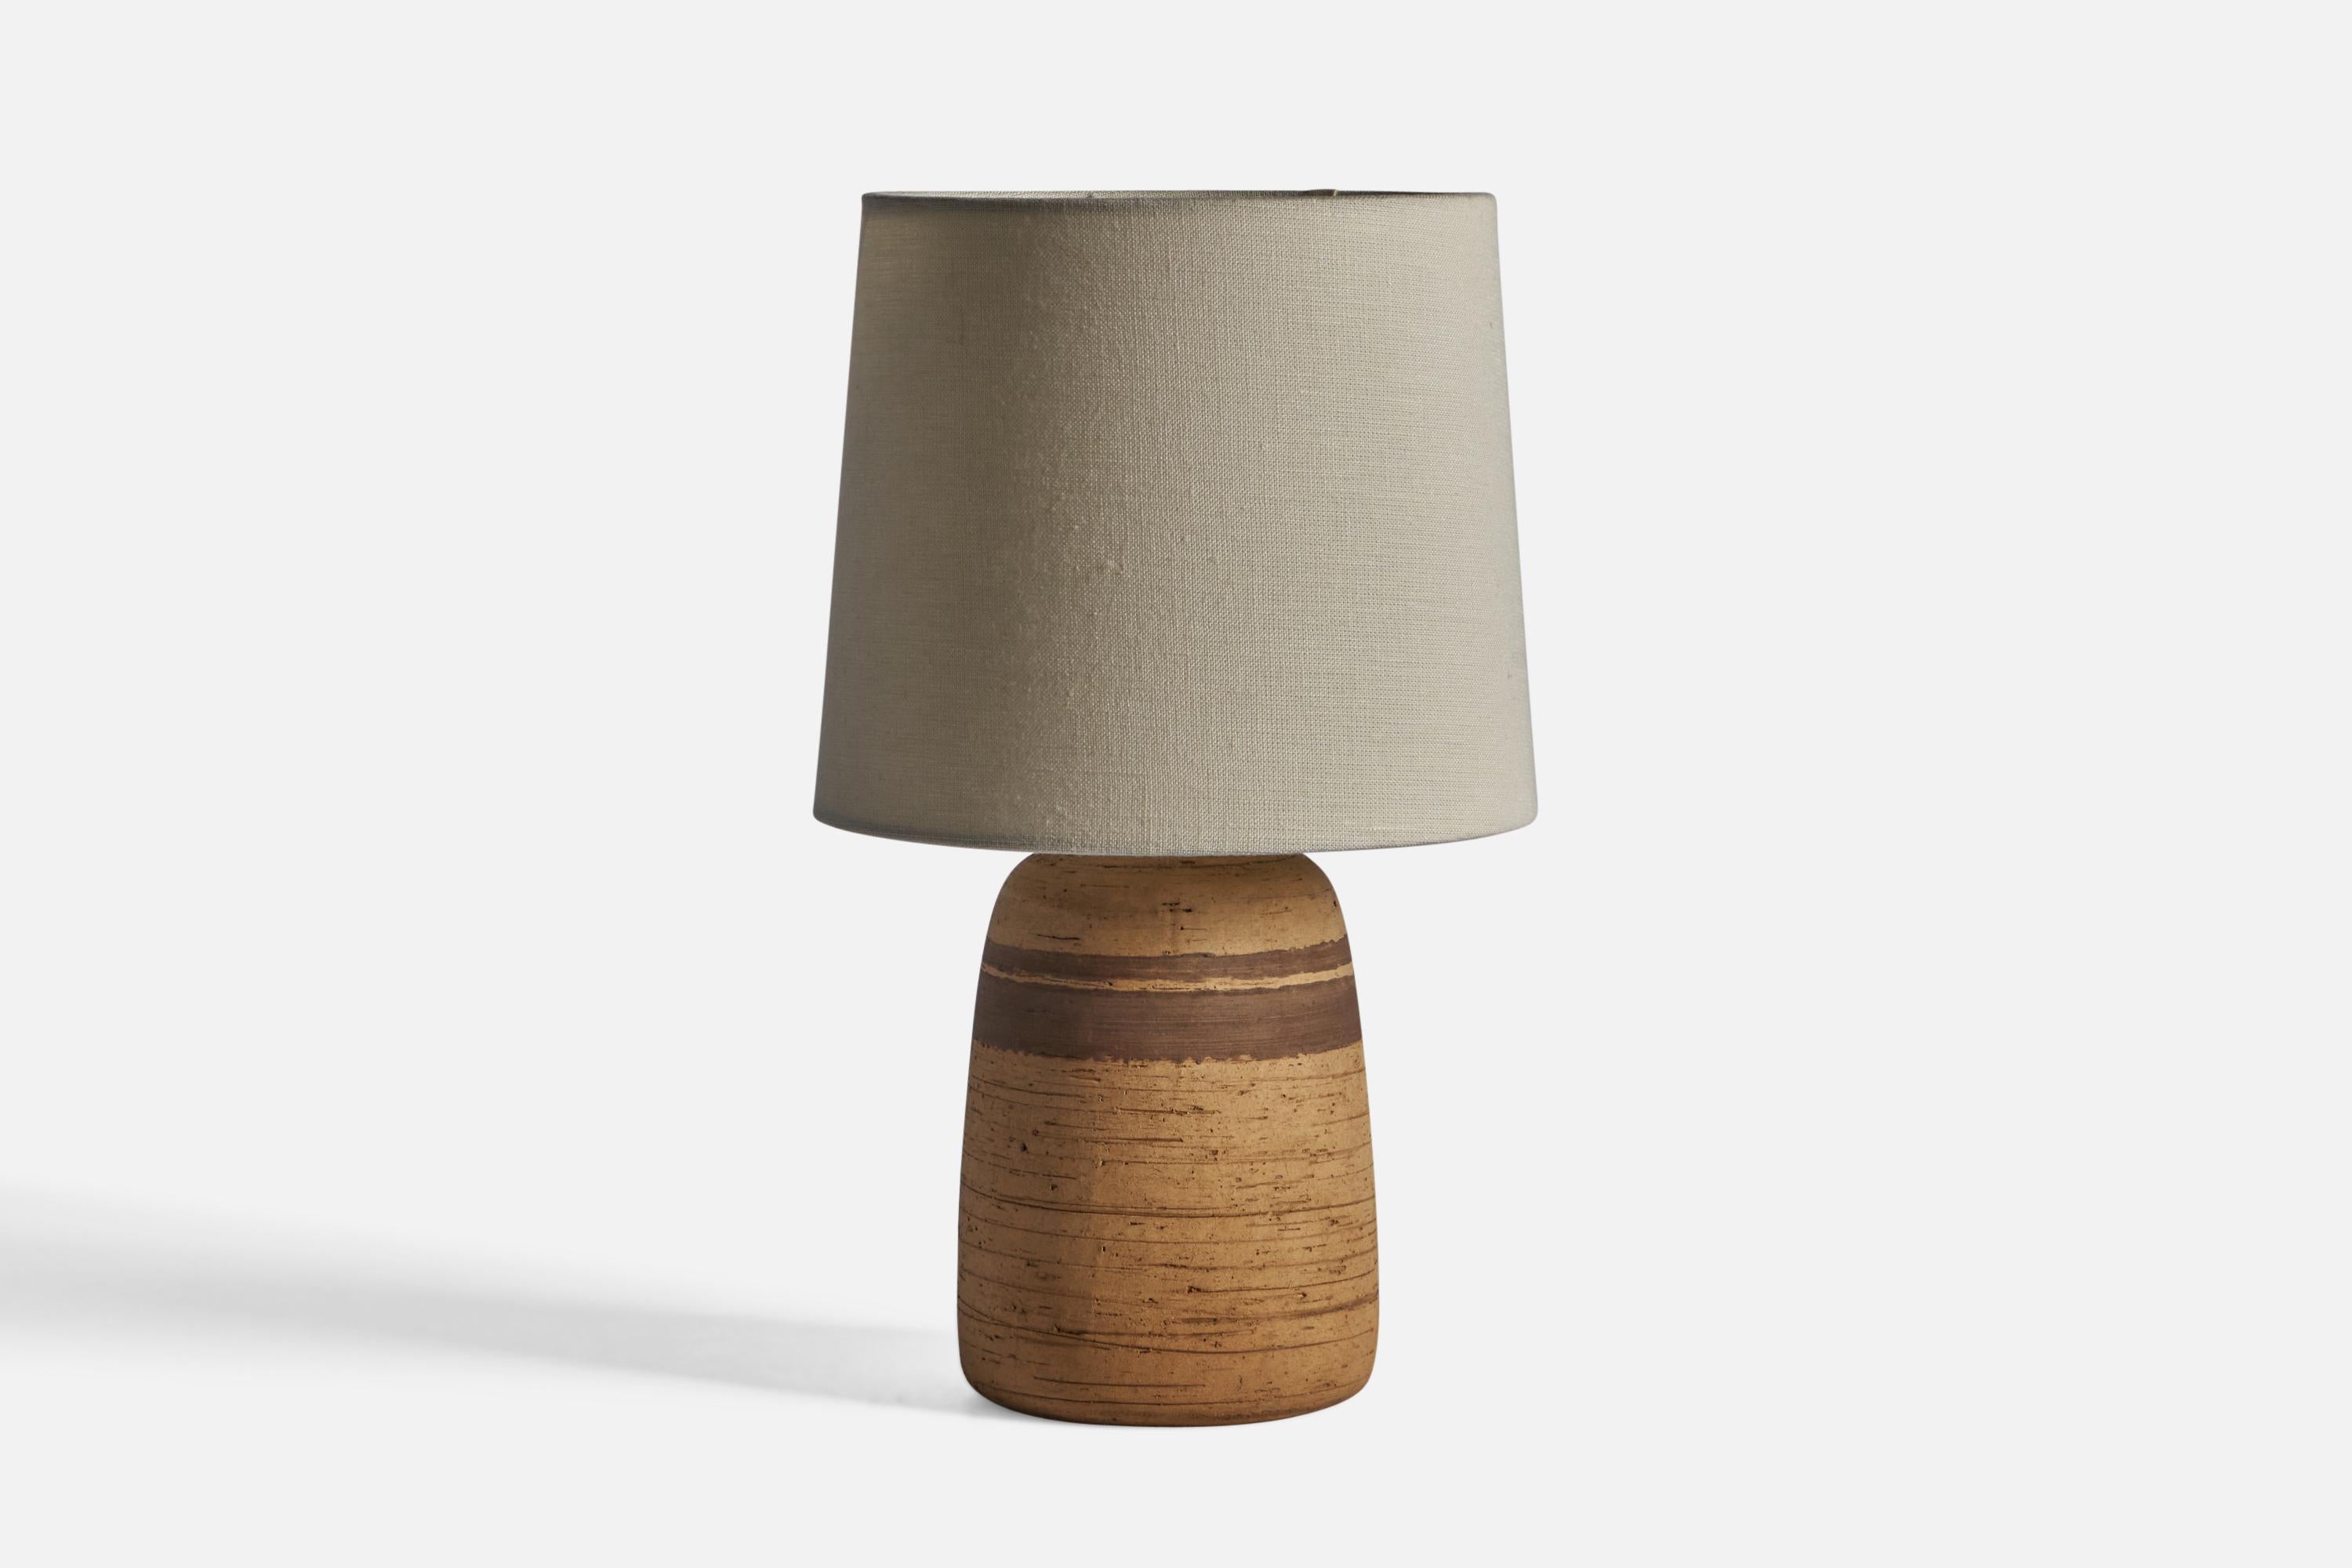 Lampe de table en grès brun et beige, conçue et produite en Suède vers les années 1960.

Dimensions de la lampe (pouces) : 13.5